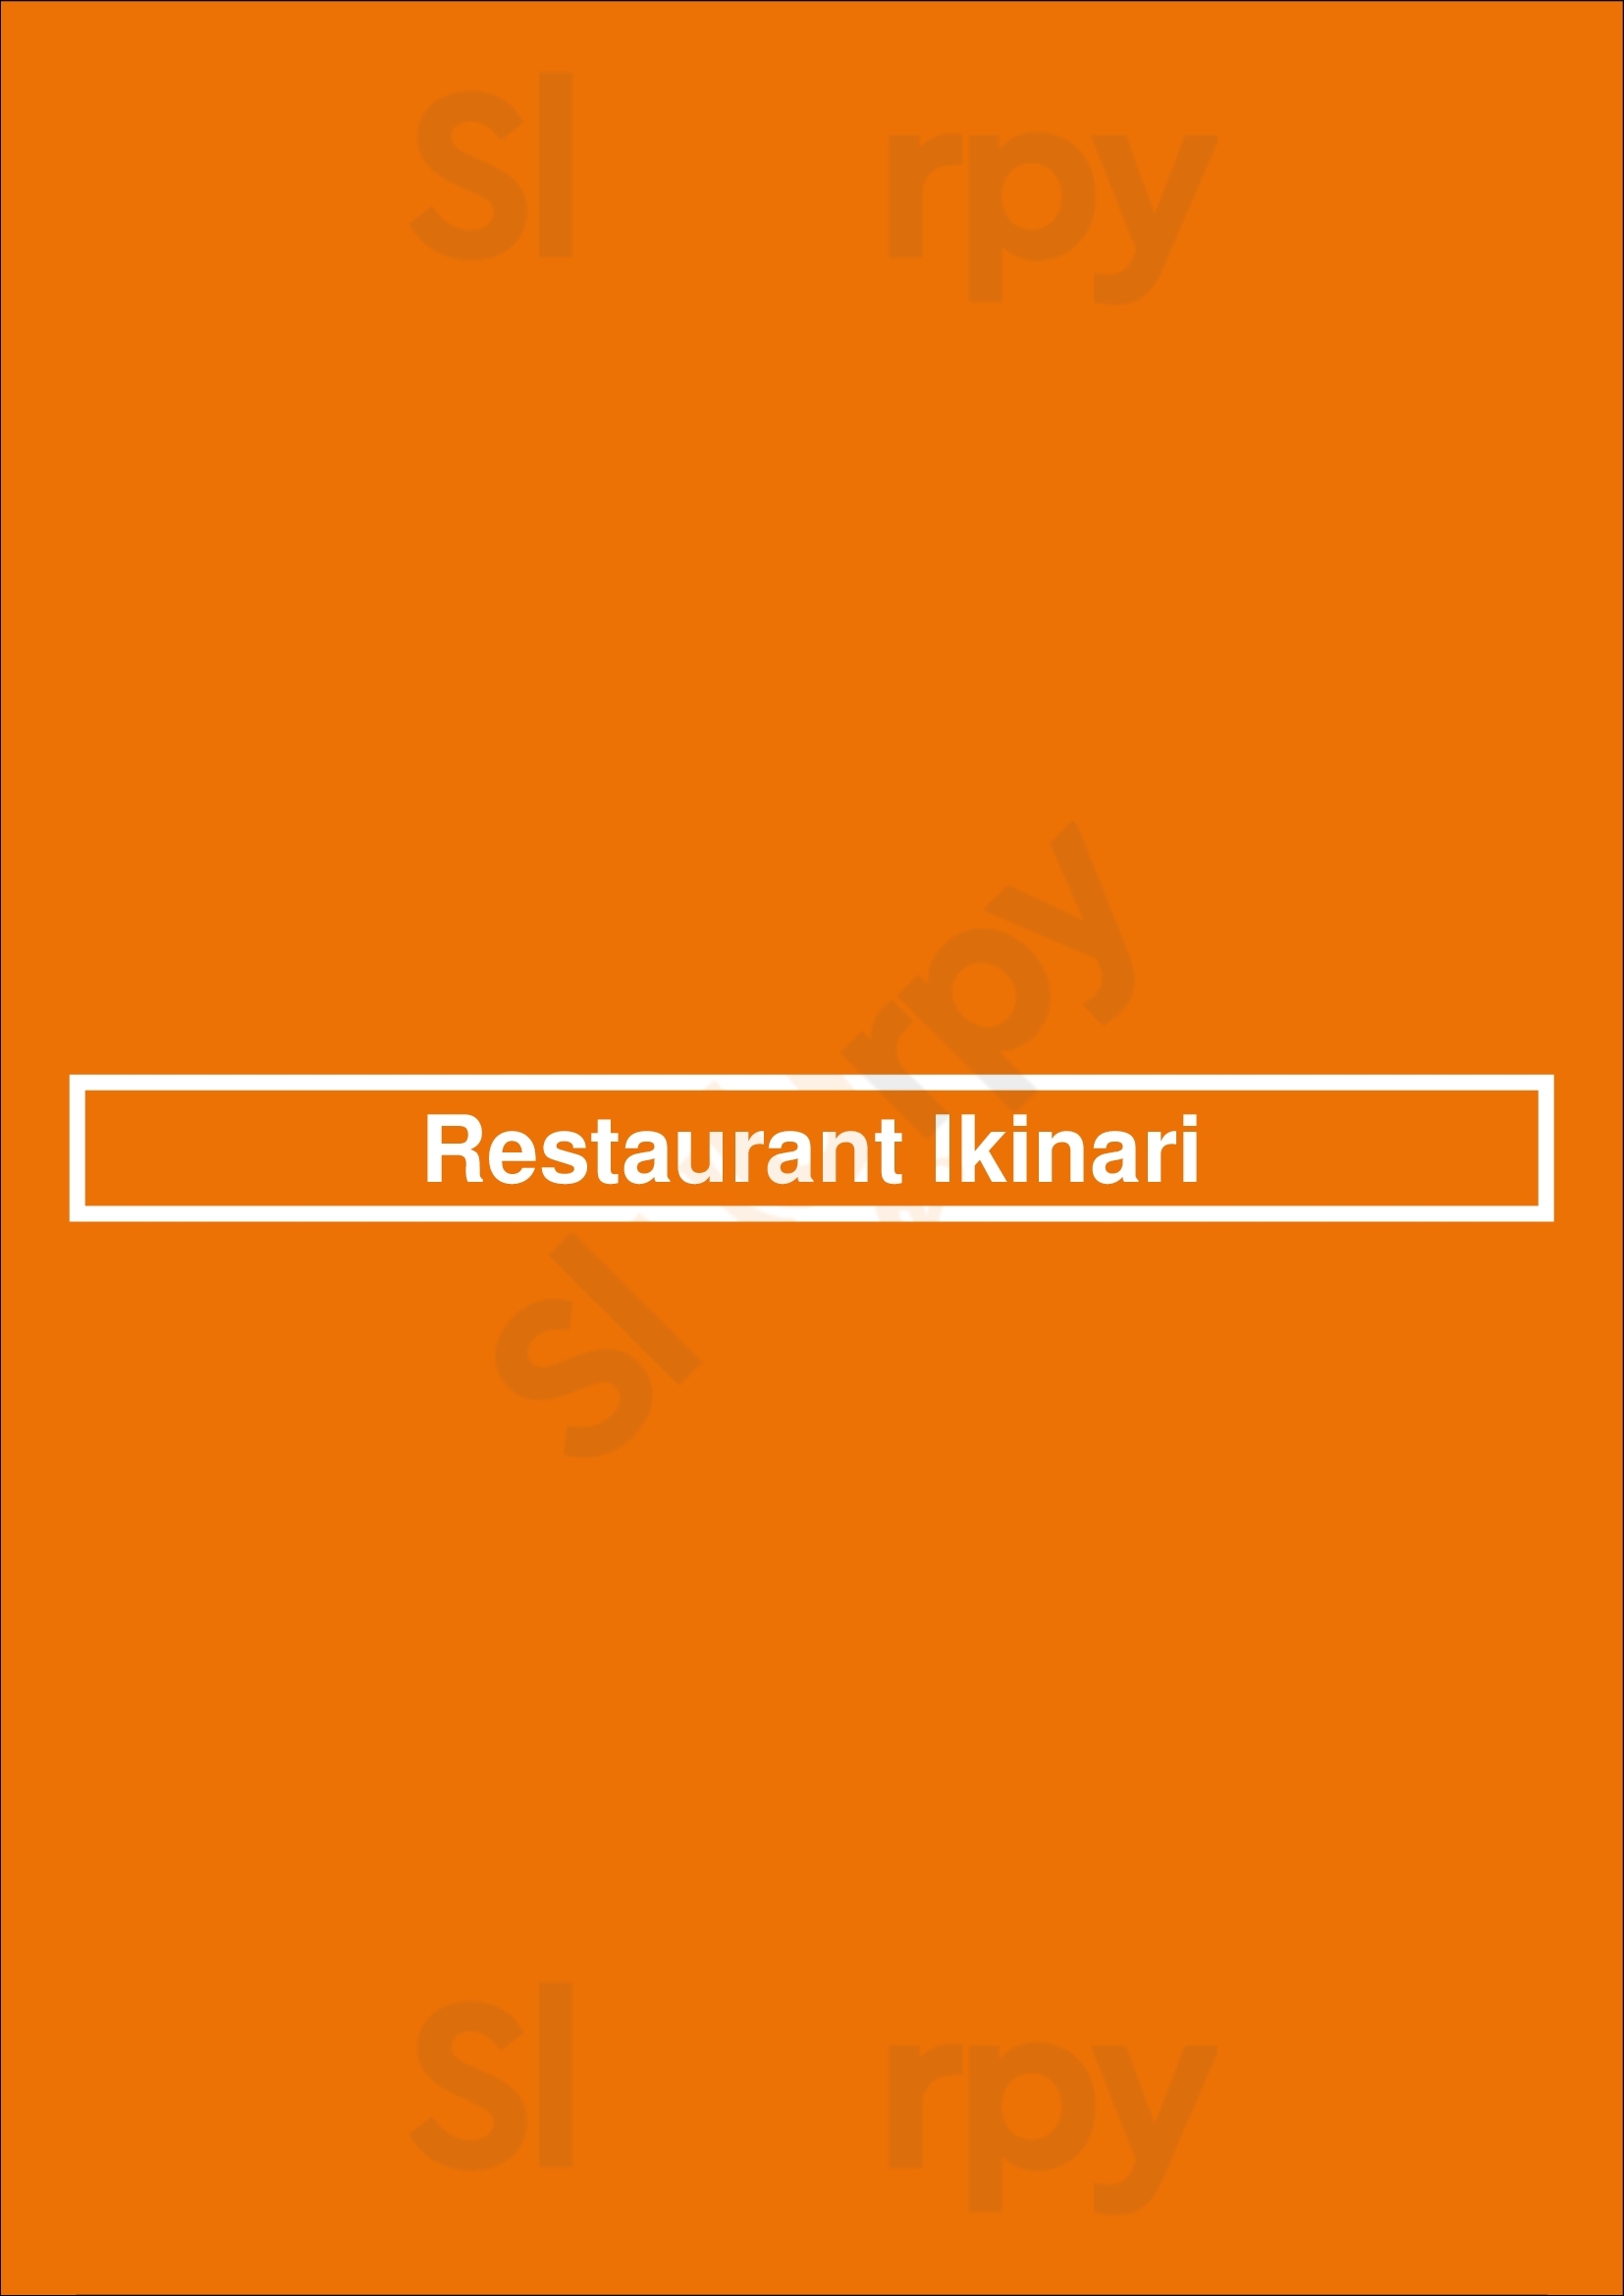 Restaurant Ikinari Meerssen Menu - 1